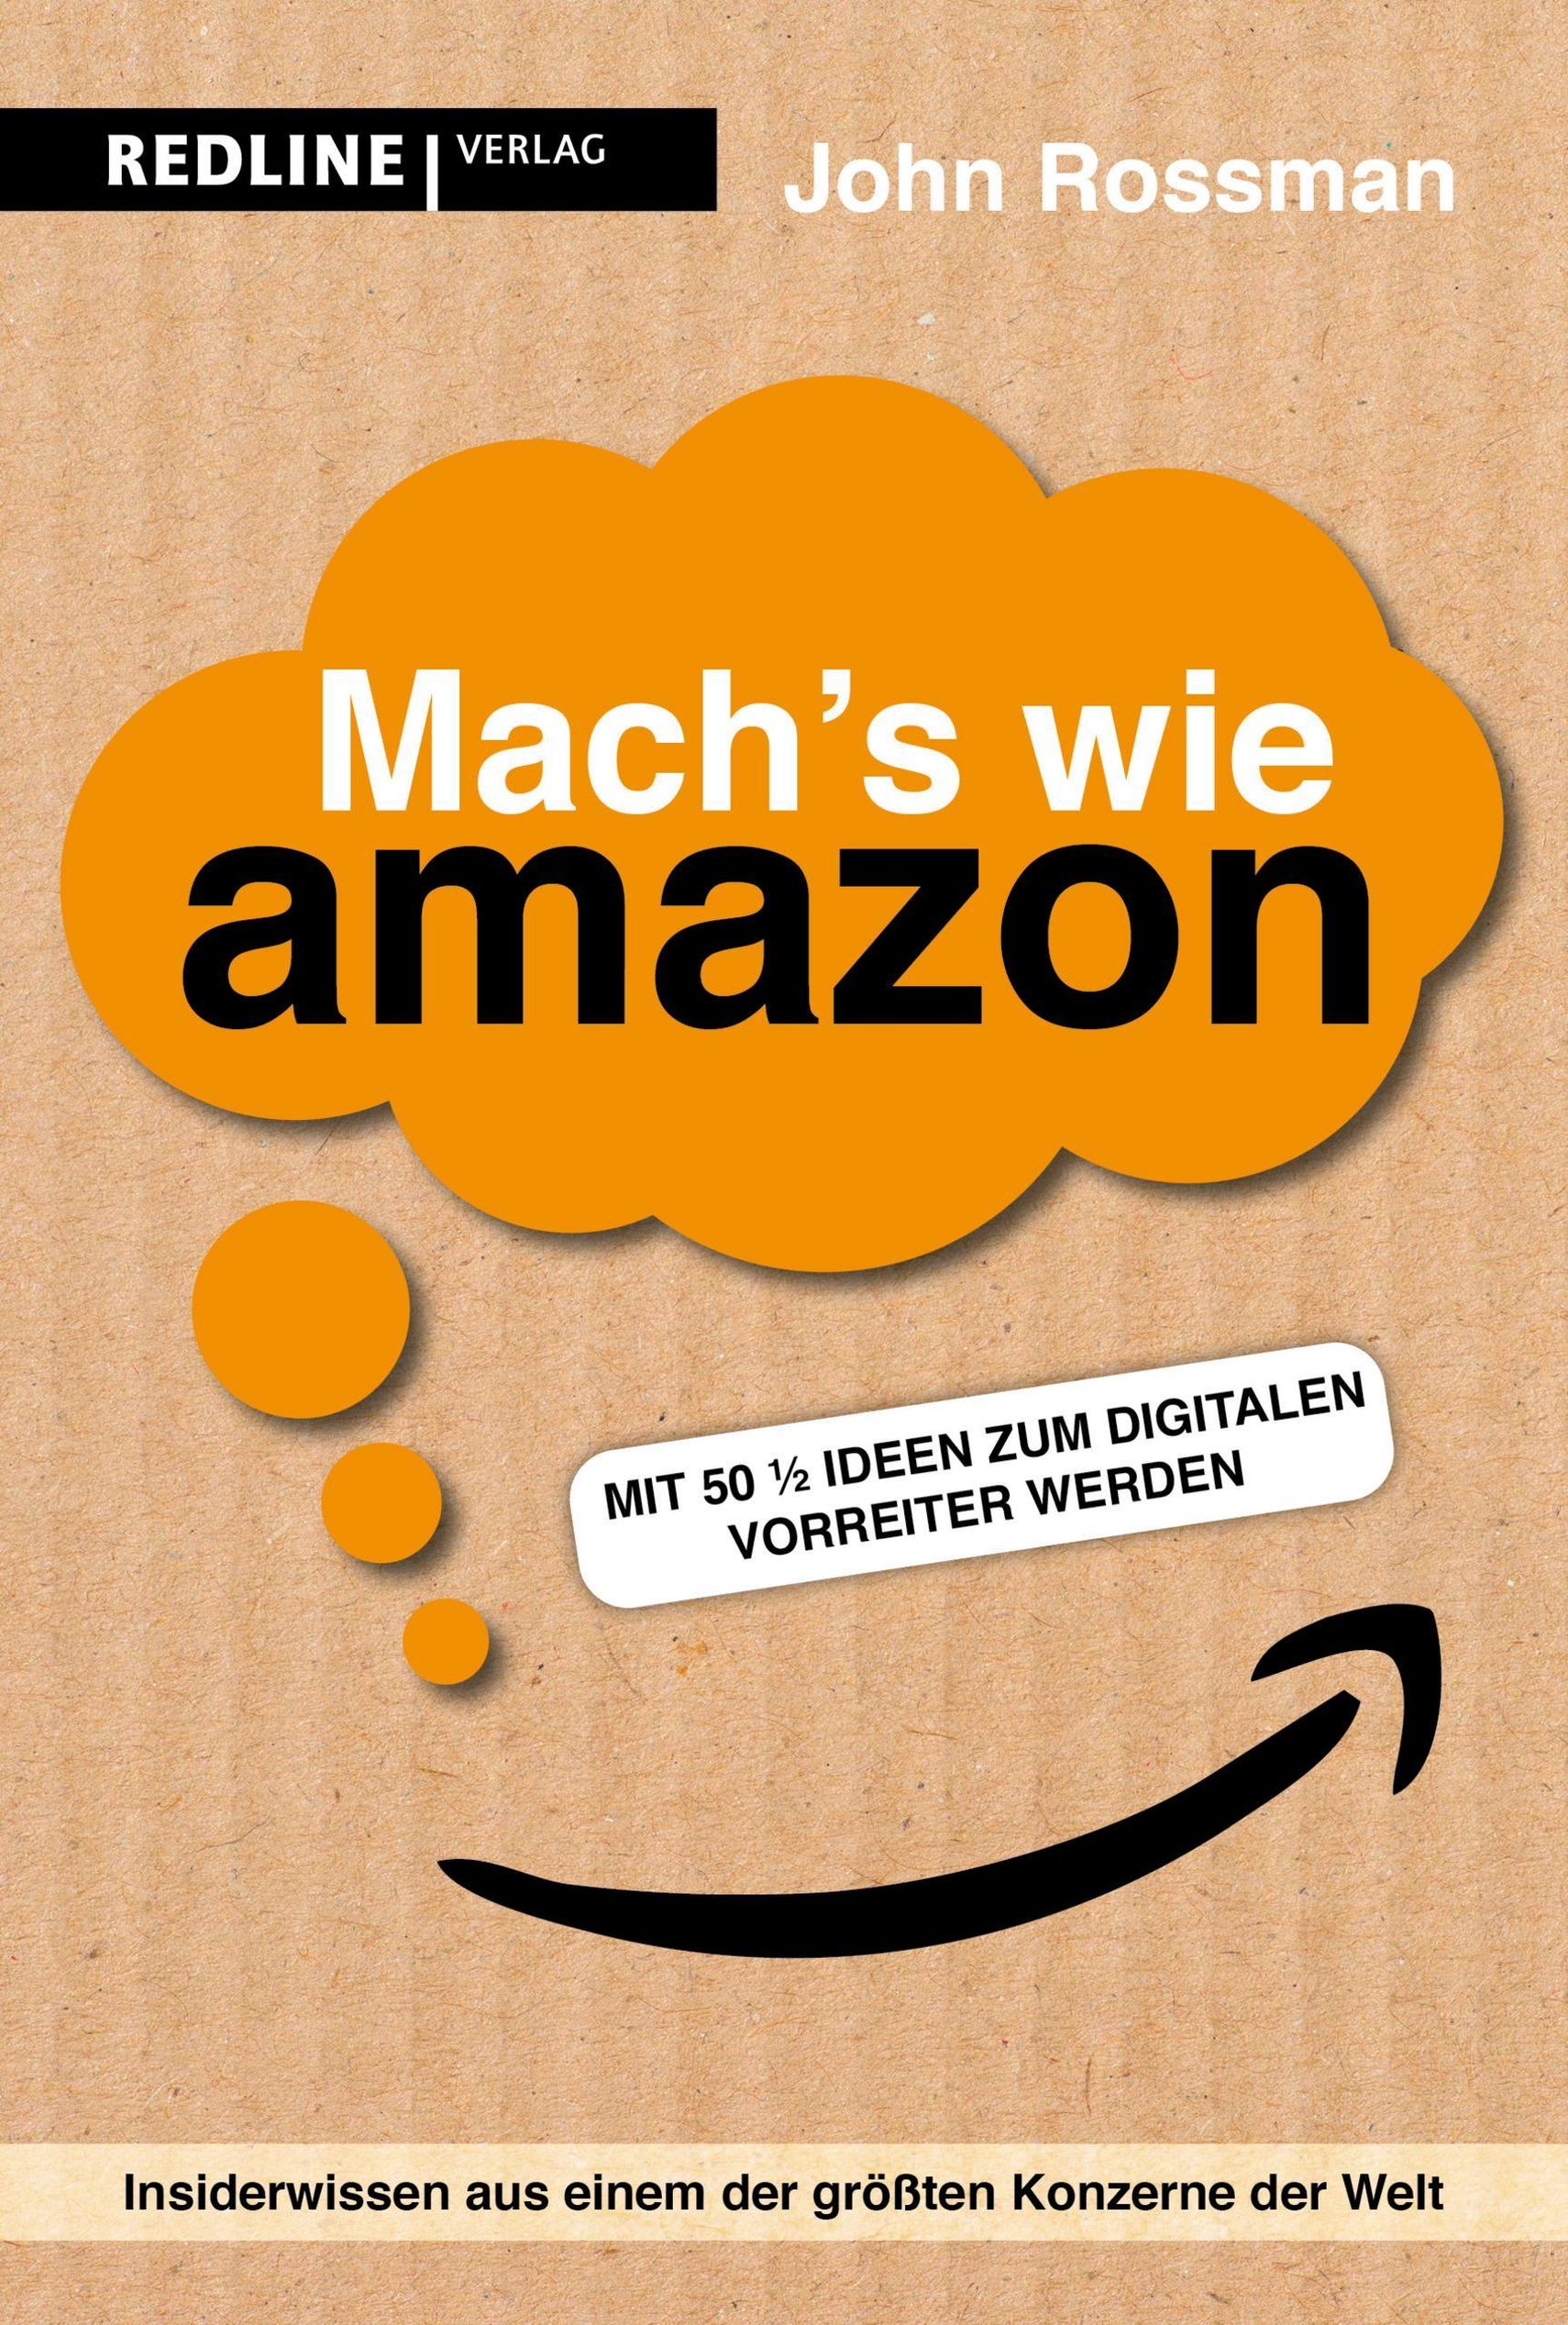 Mach's wie Amazon! Buch von John Rossman versandkostenfrei - Weltbild.ch